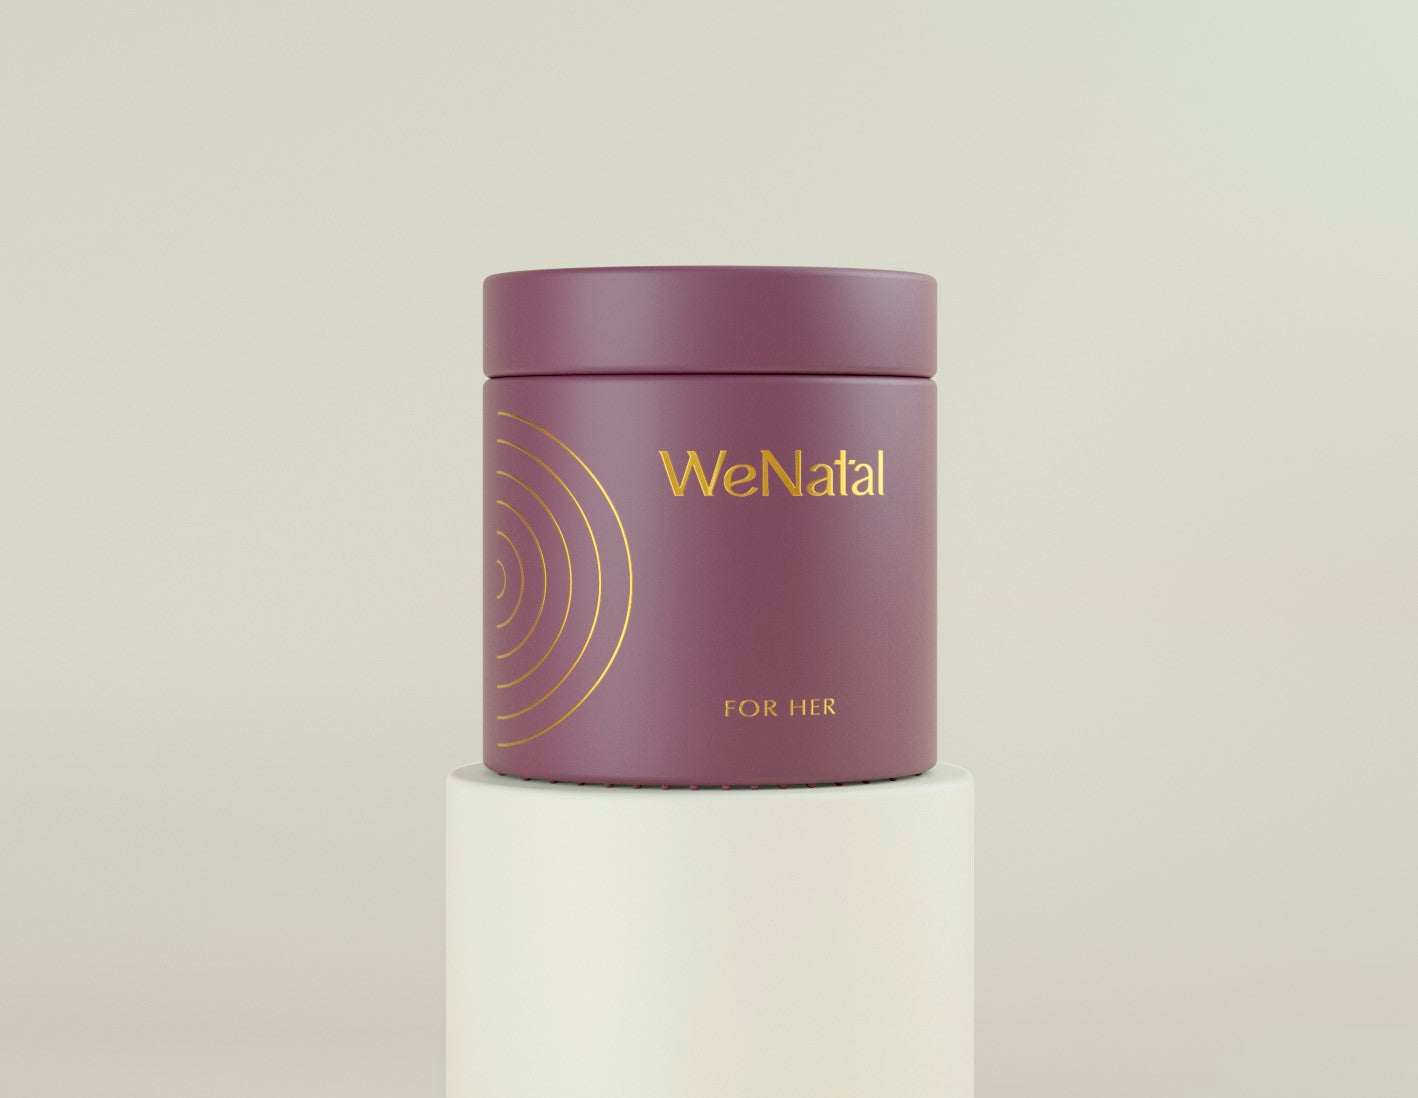 WeNatal For Her glass jar on a pedestal